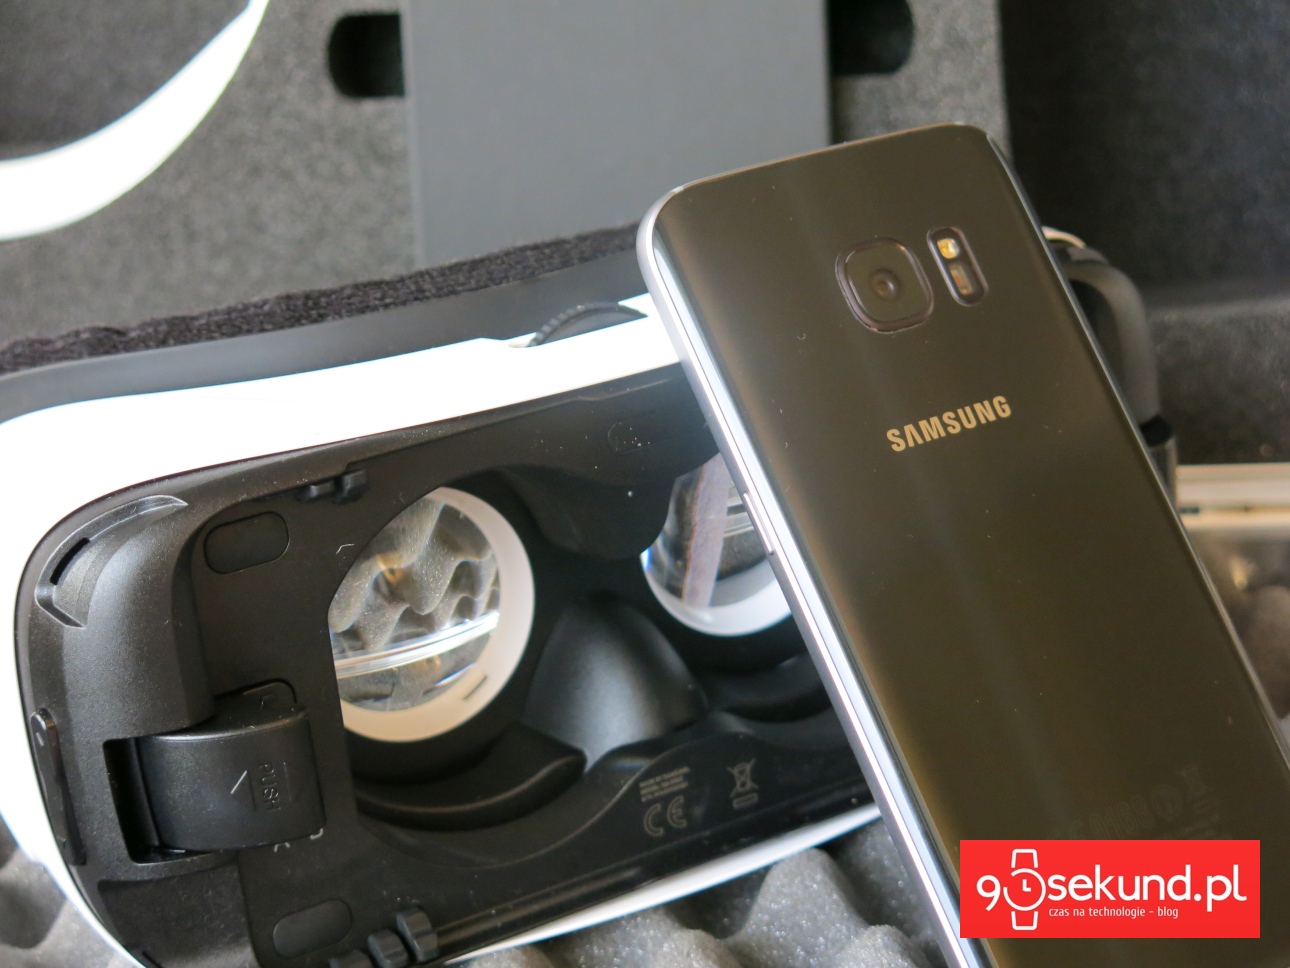 Samsung Galaxy S7 SM-G930 oraz headset Gear VR- recenzja 90sekund.pl